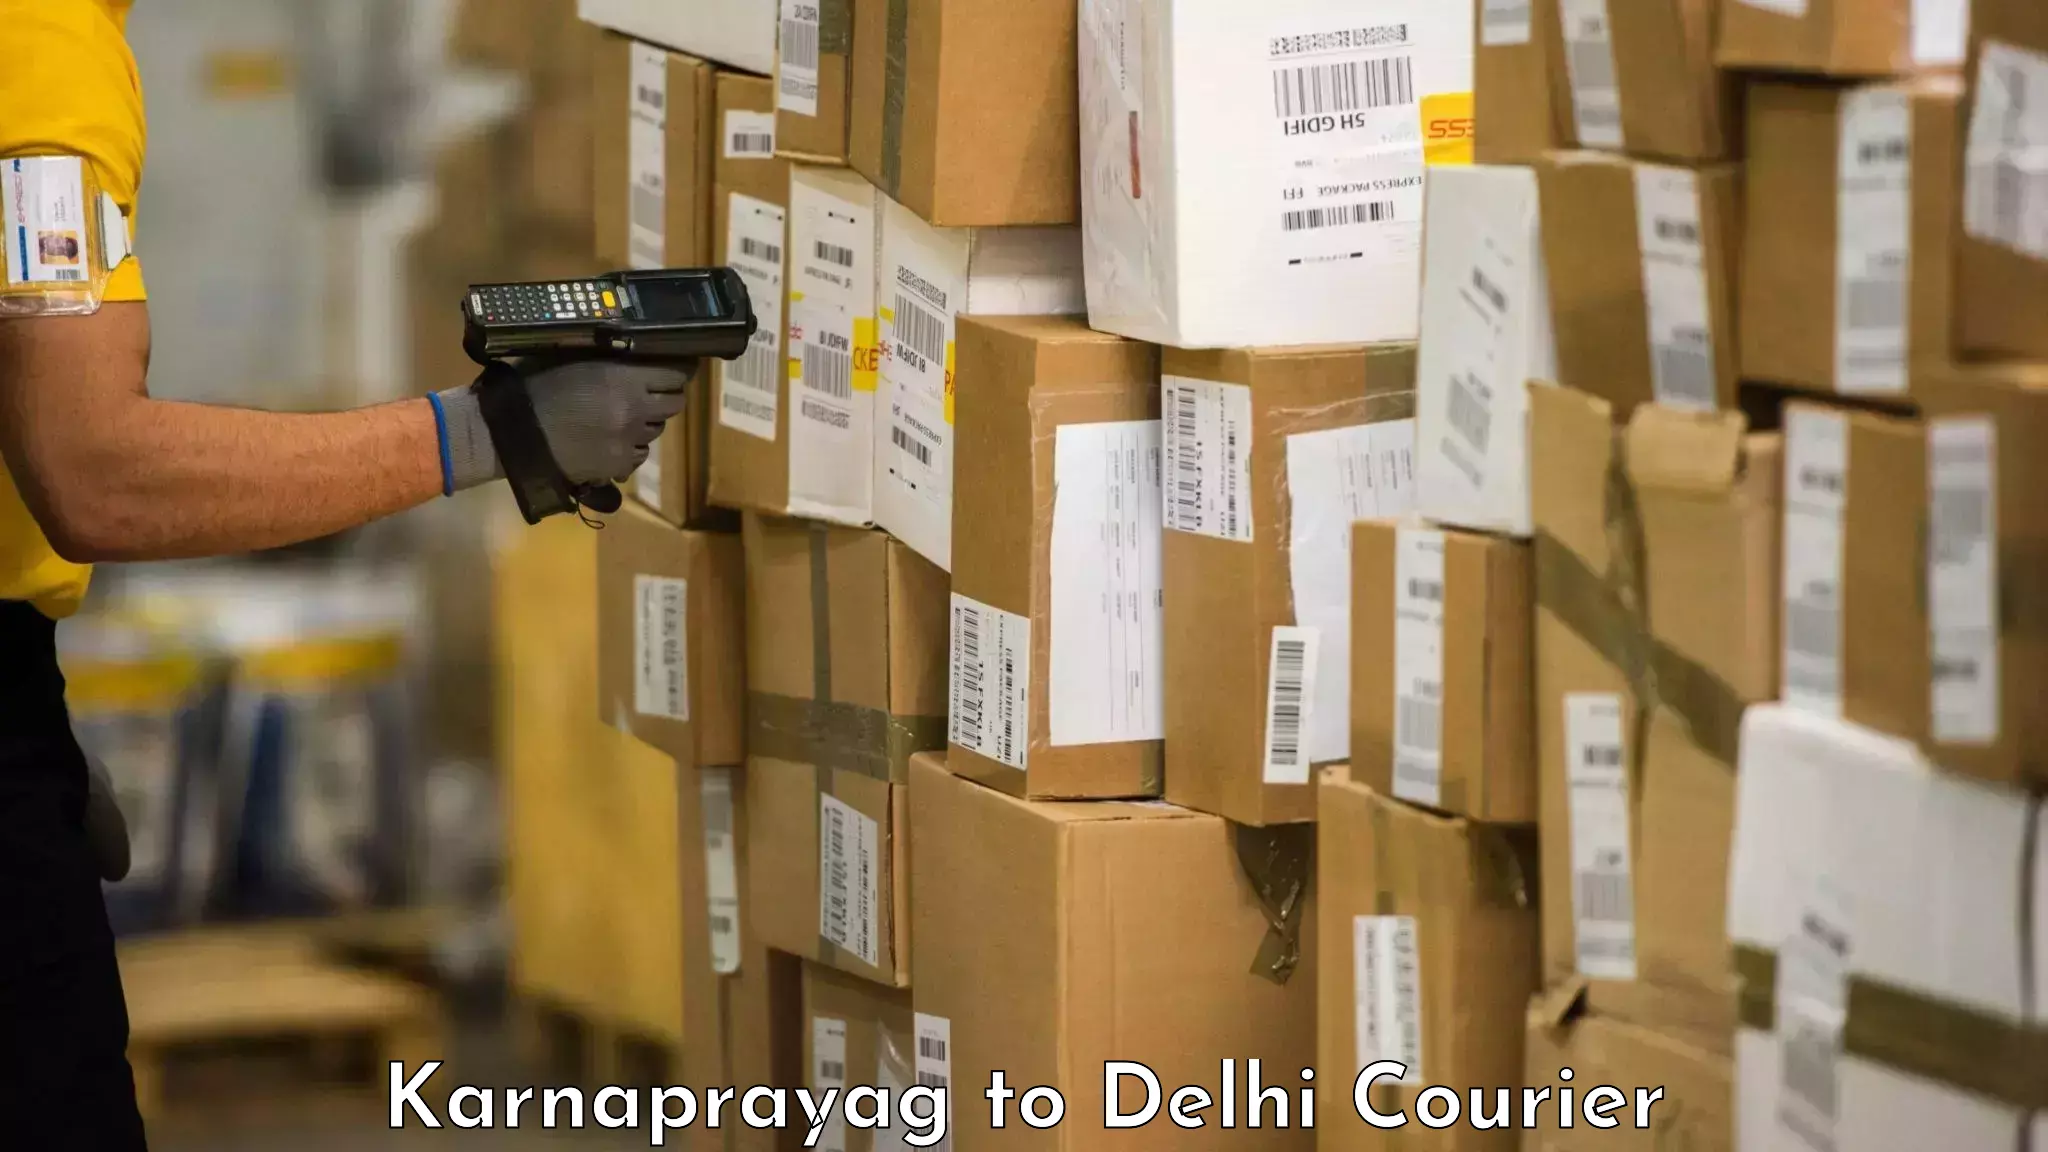 Same day luggage service Karnaprayag to Jamia Millia Islamia New Delhi